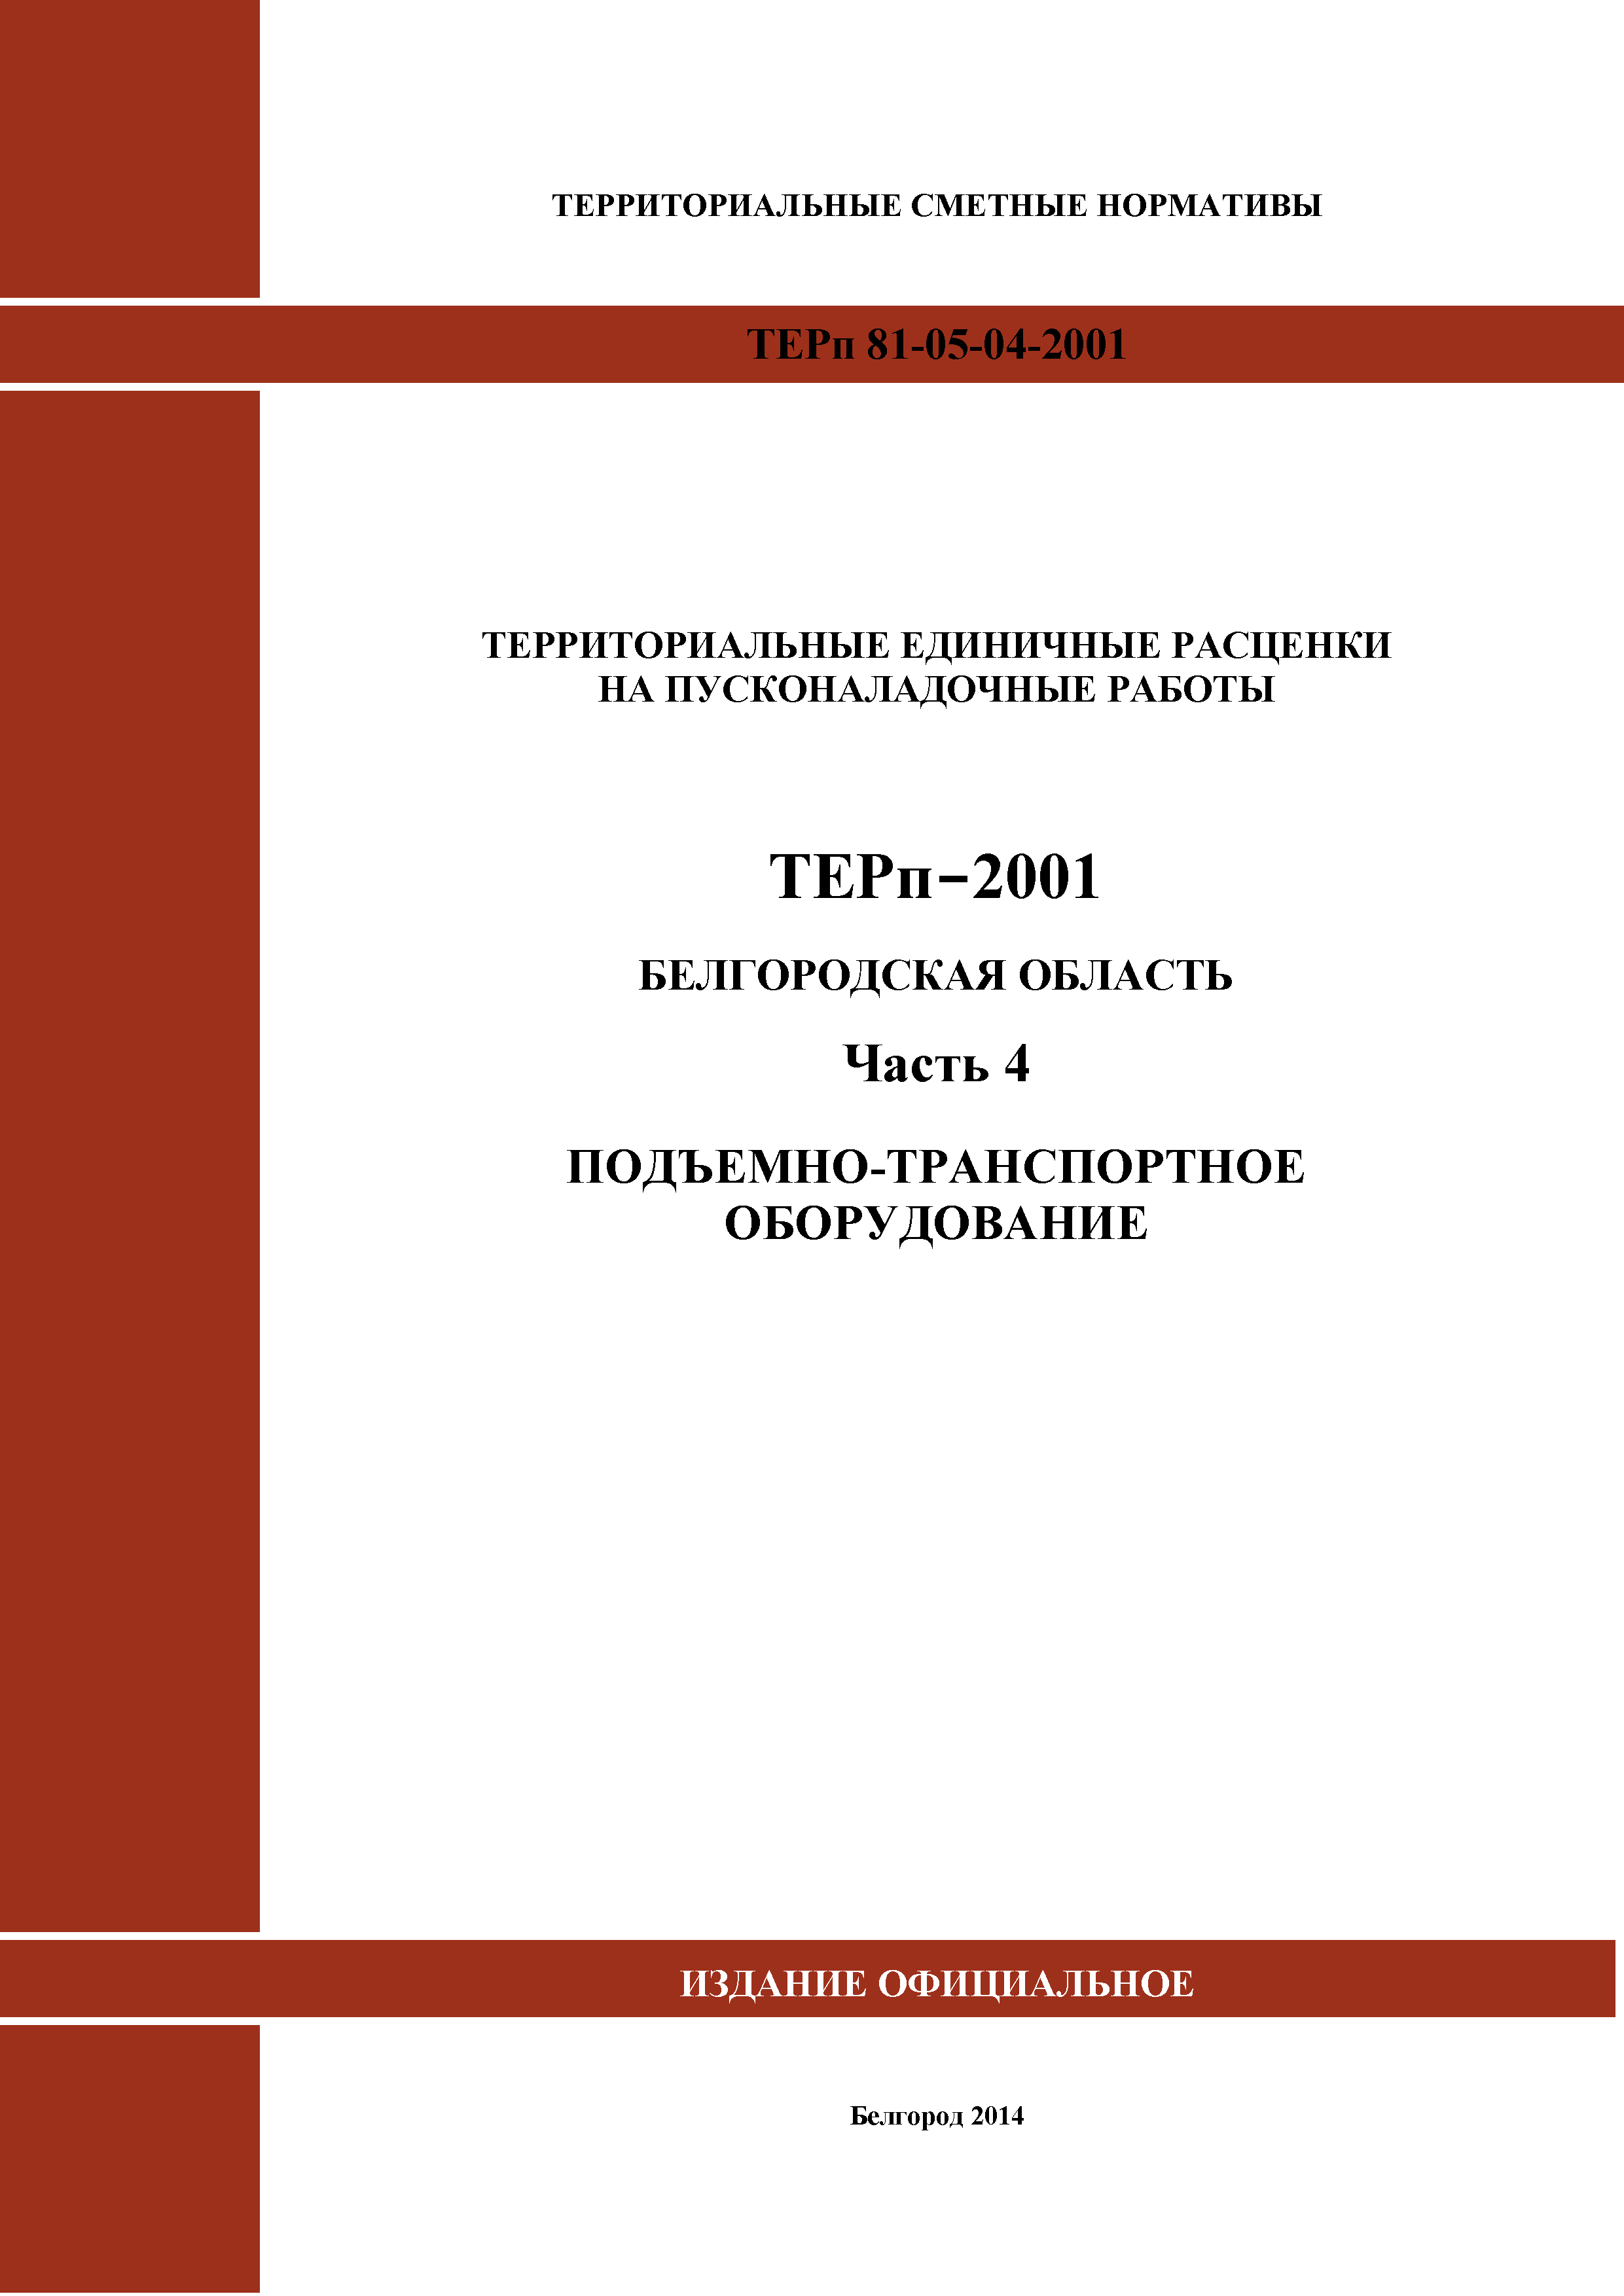 ТЕРп Белгородская область 81-05-04-2001